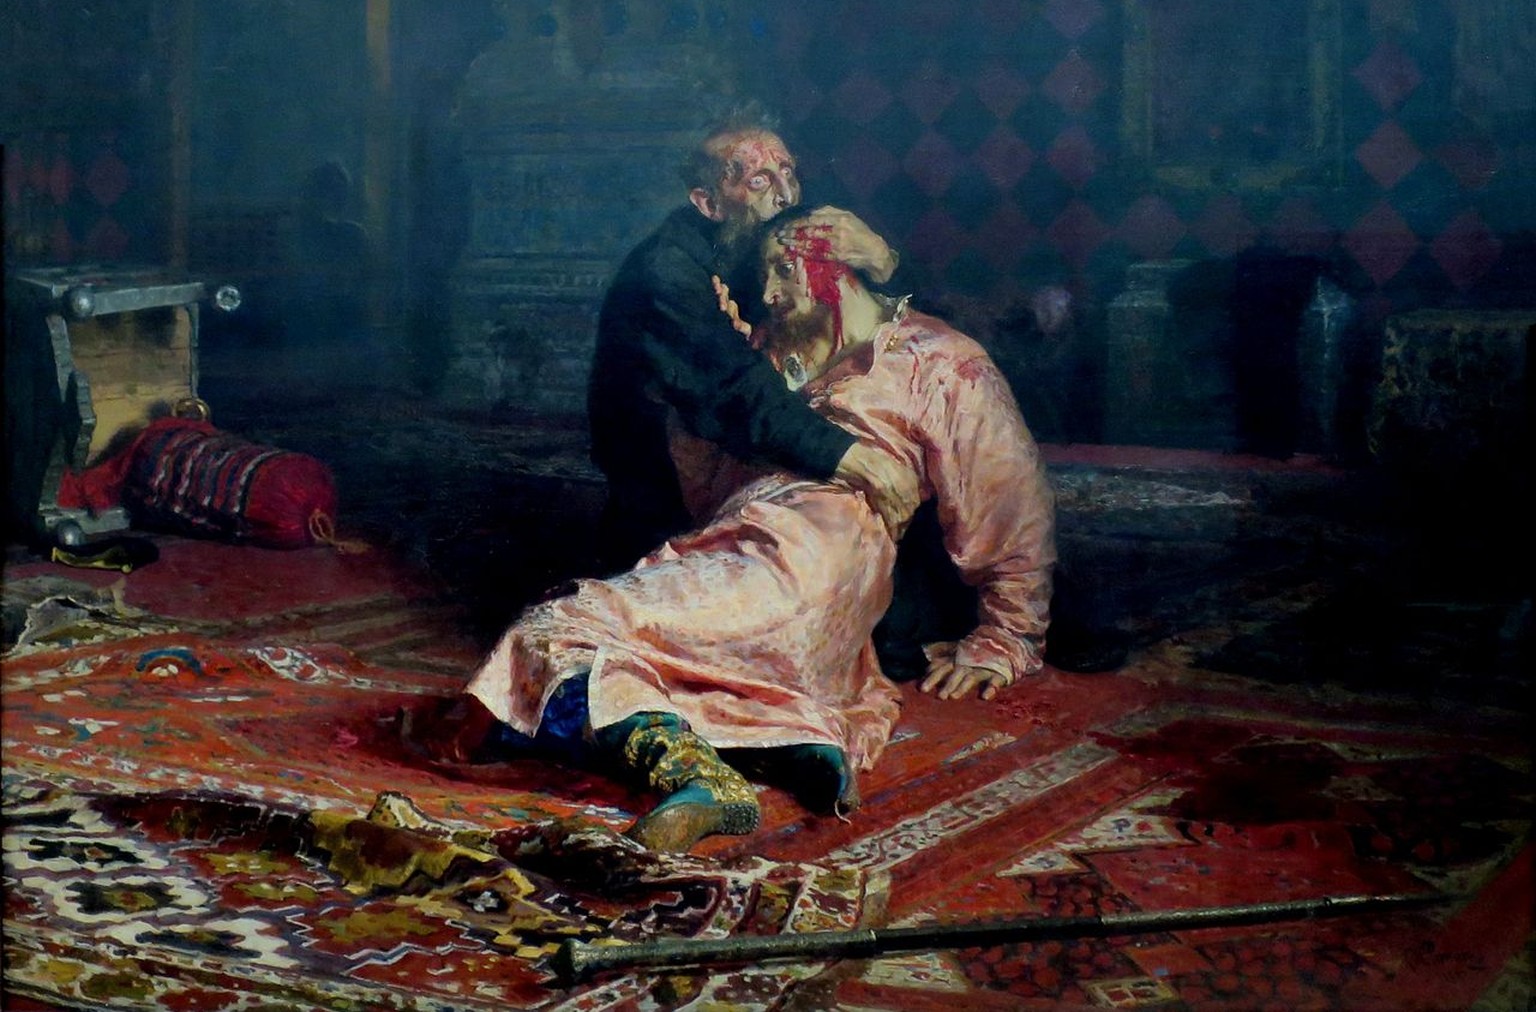 Gemälde von Ilja Repin, 1885: Iwan der Schreckliche erschlug im Streit seinen Sohn mit der Stahlspitze seines Herrscherstabes.